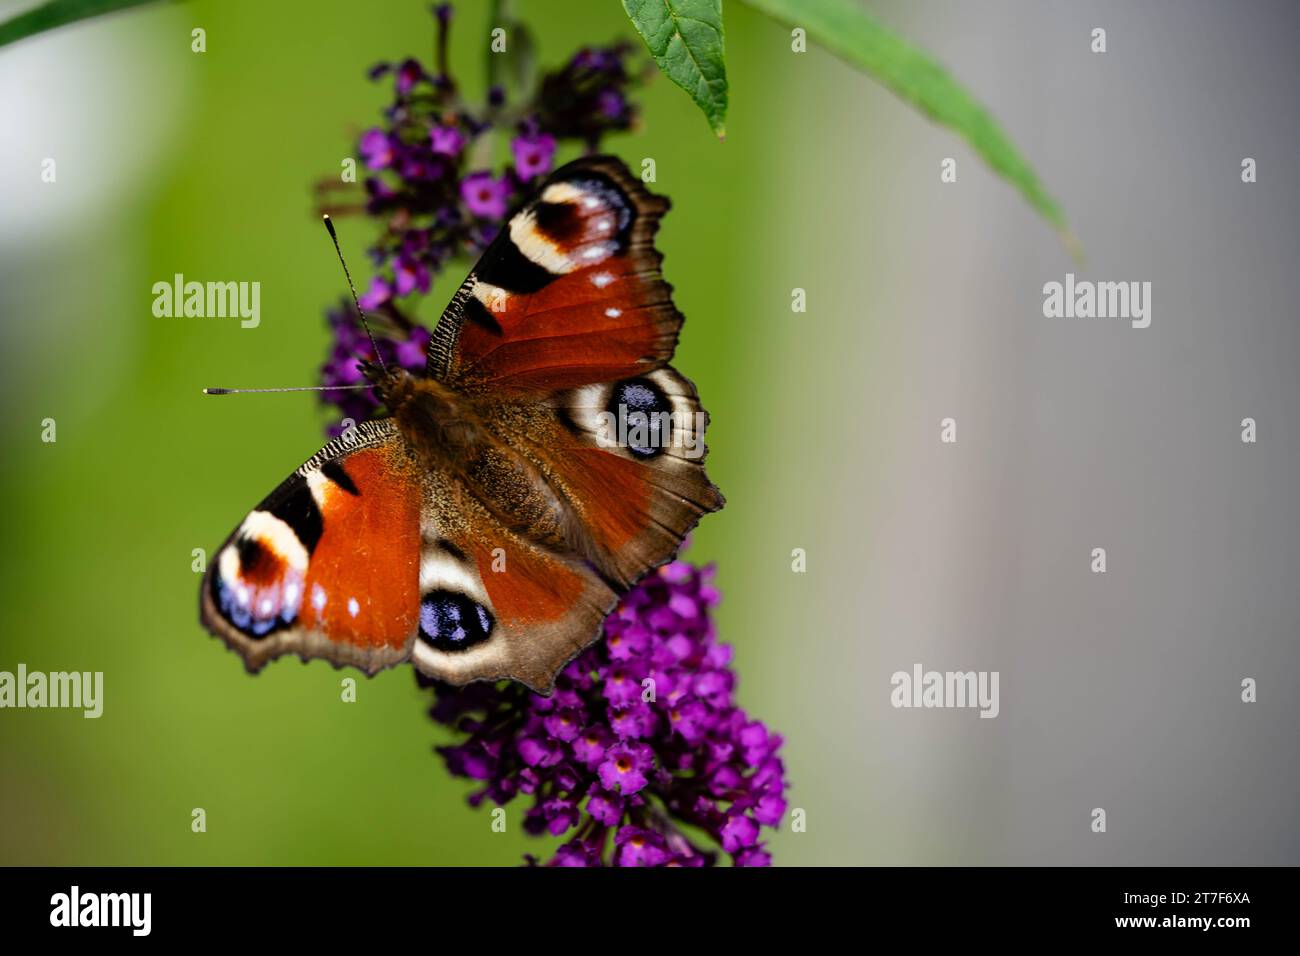 insects on the butterfly bush Buddleja davidii Stock Photo